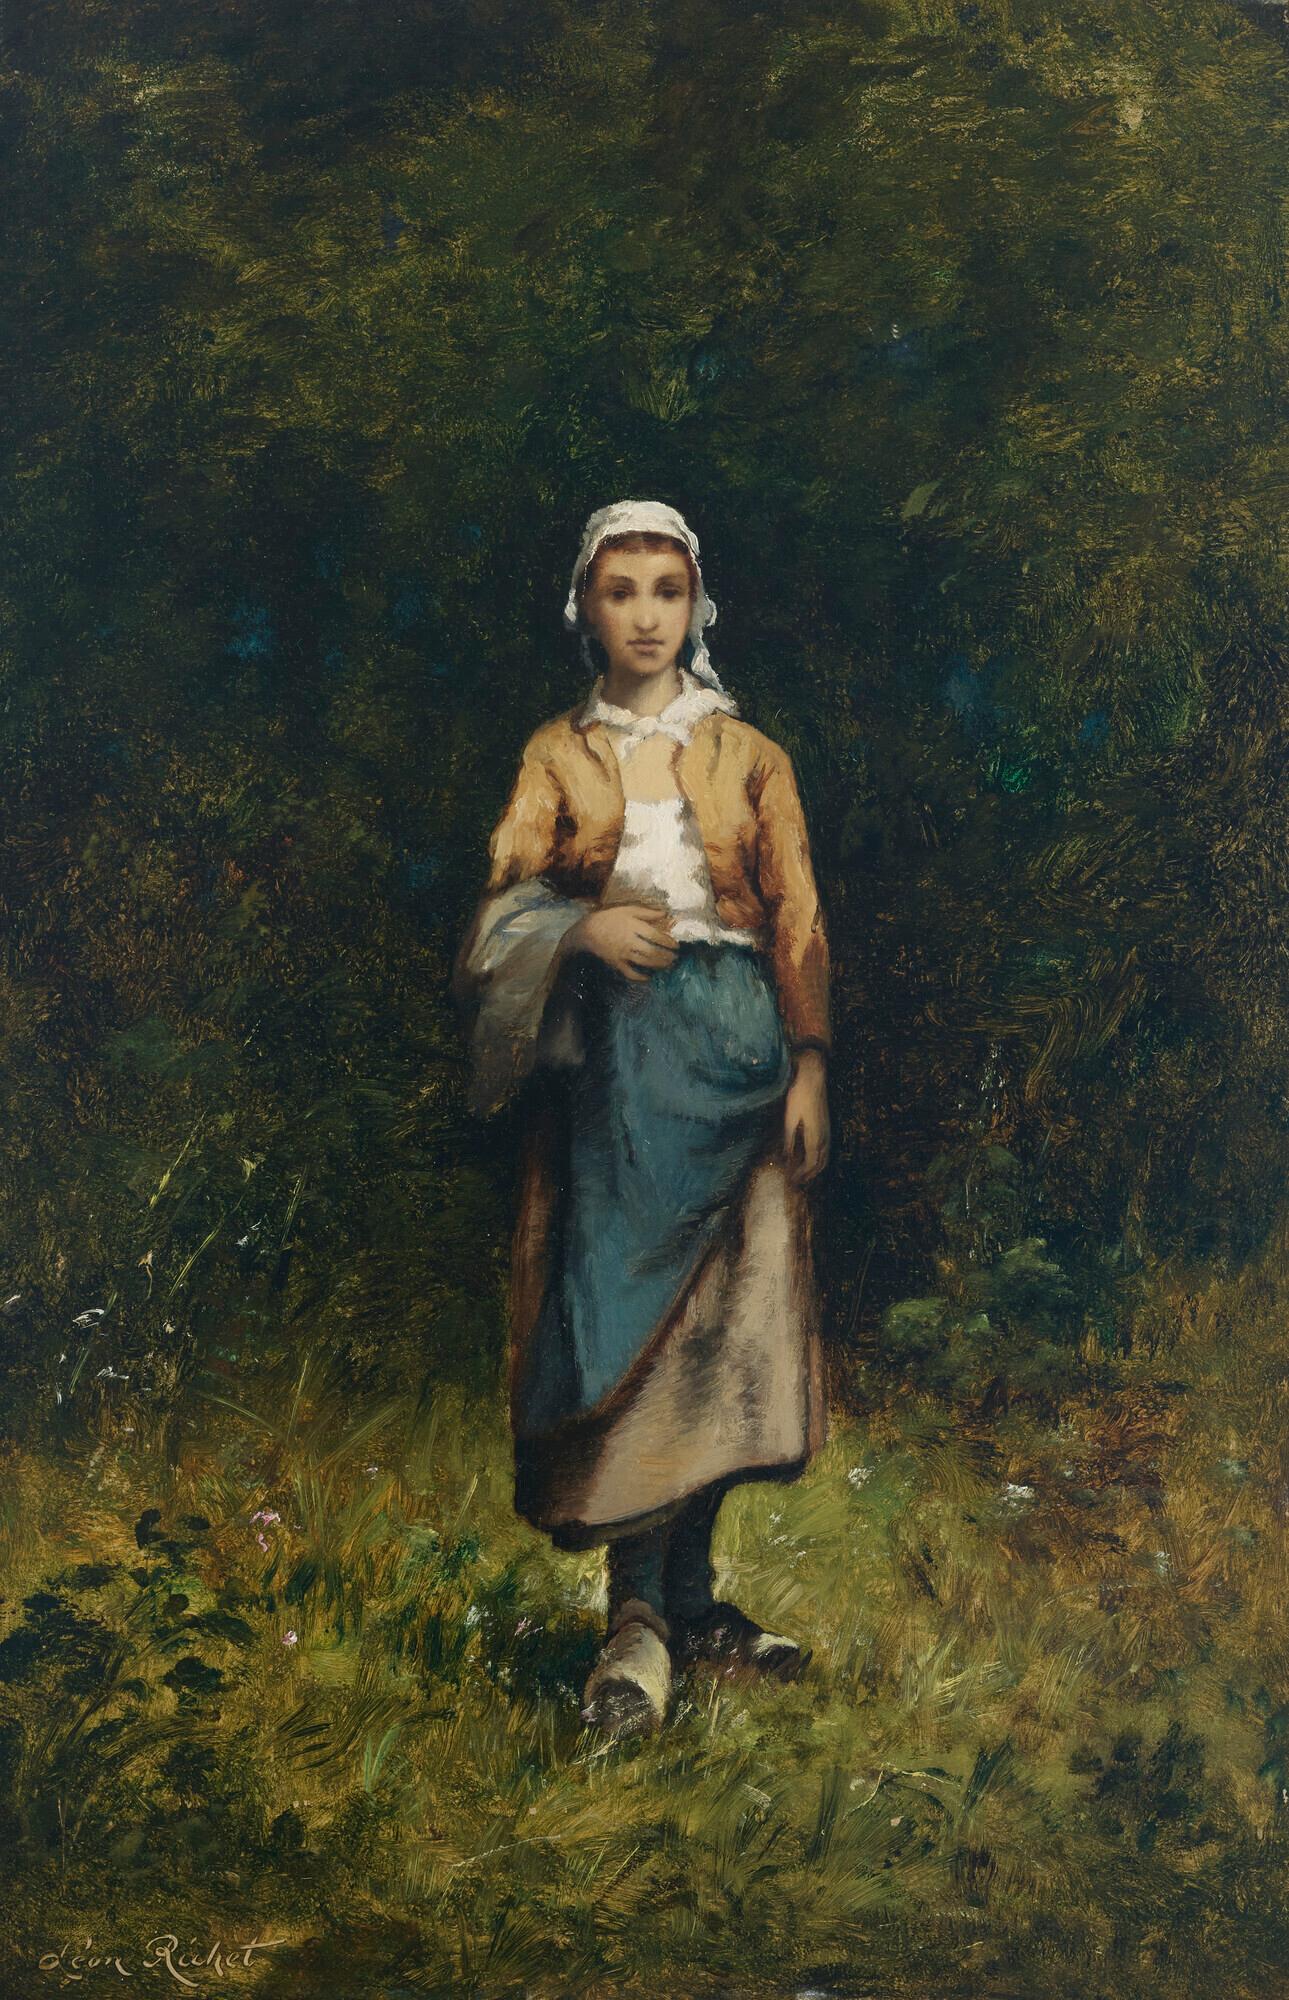 Leon Richet Portrait Painting - Paysanne dans un bois